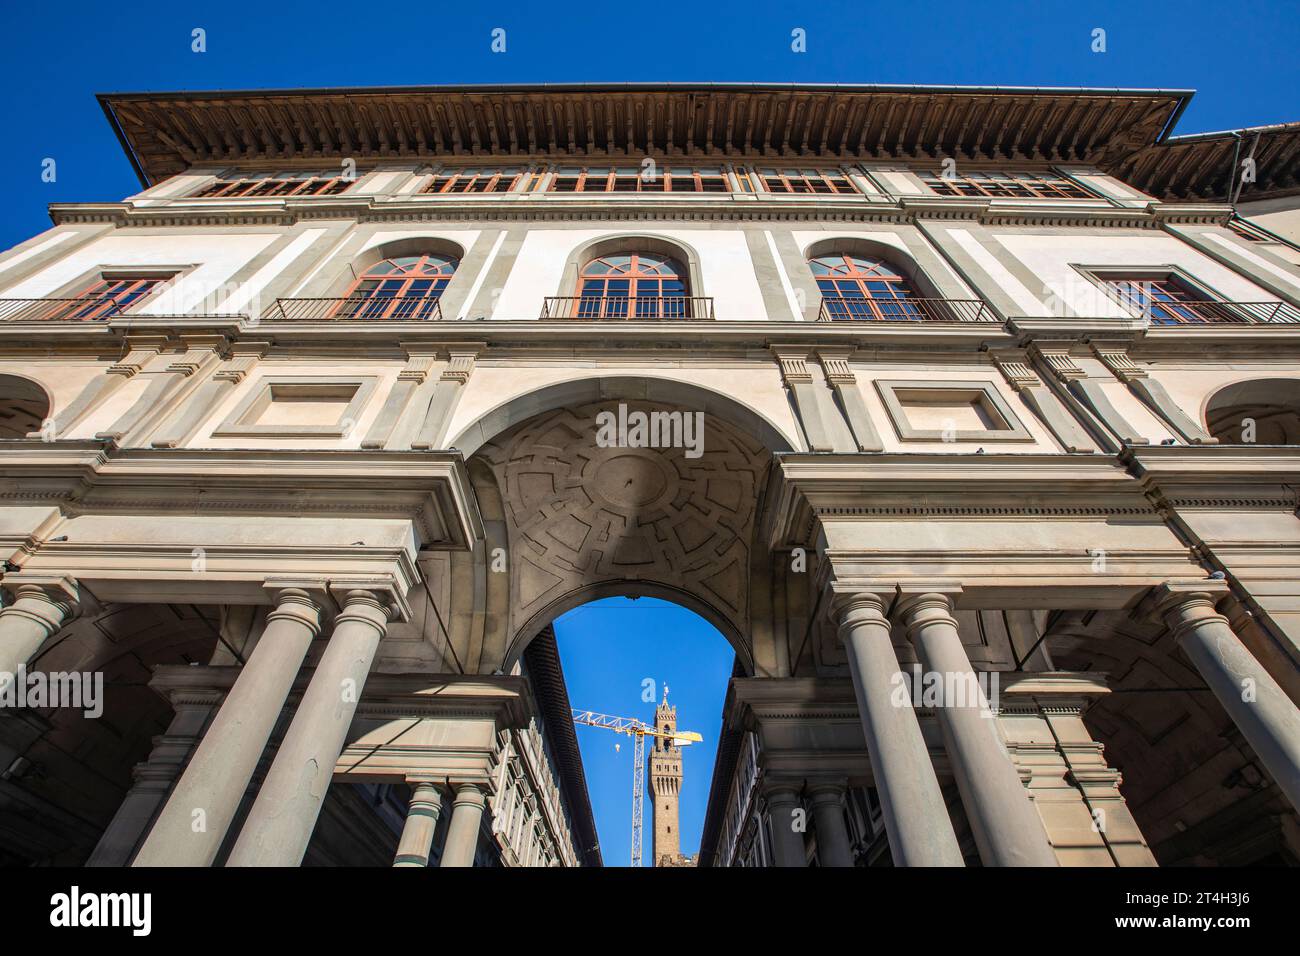 Florence, Italie : Galerie des Offices à Piazzale degli Uffizi à Florence. Italie a. Banque D'Images